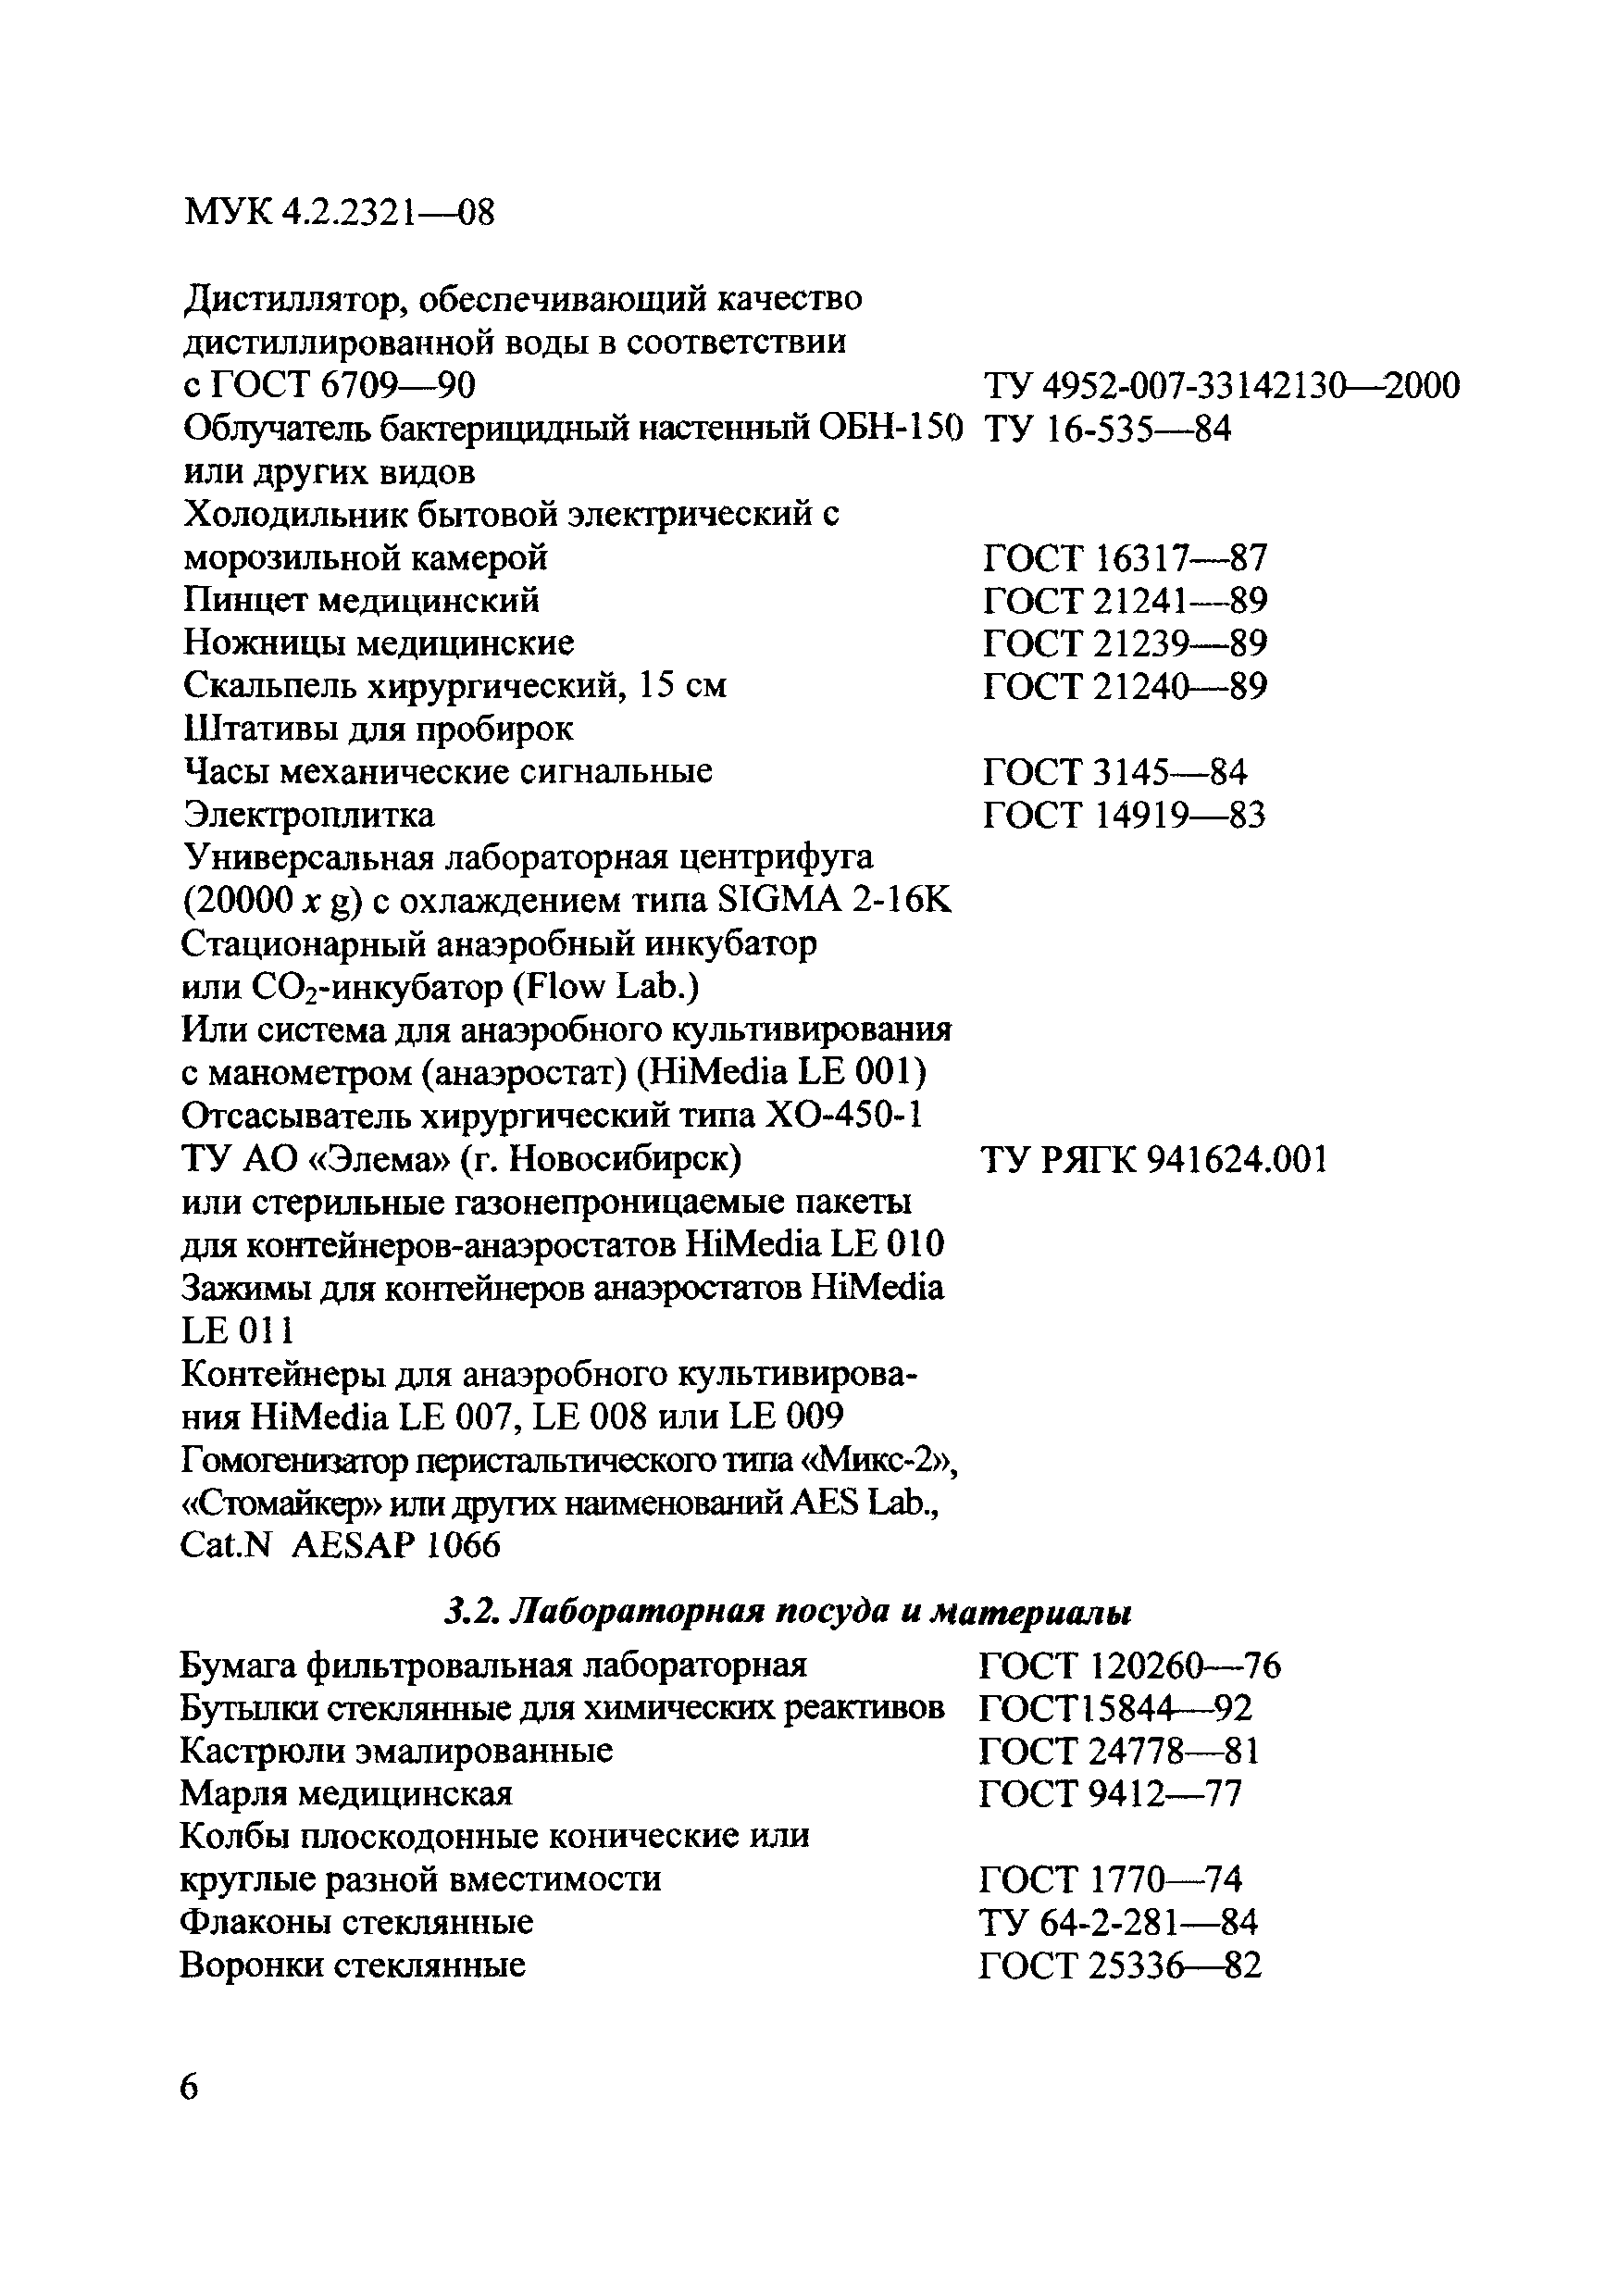 МУК 4.2.2321-08